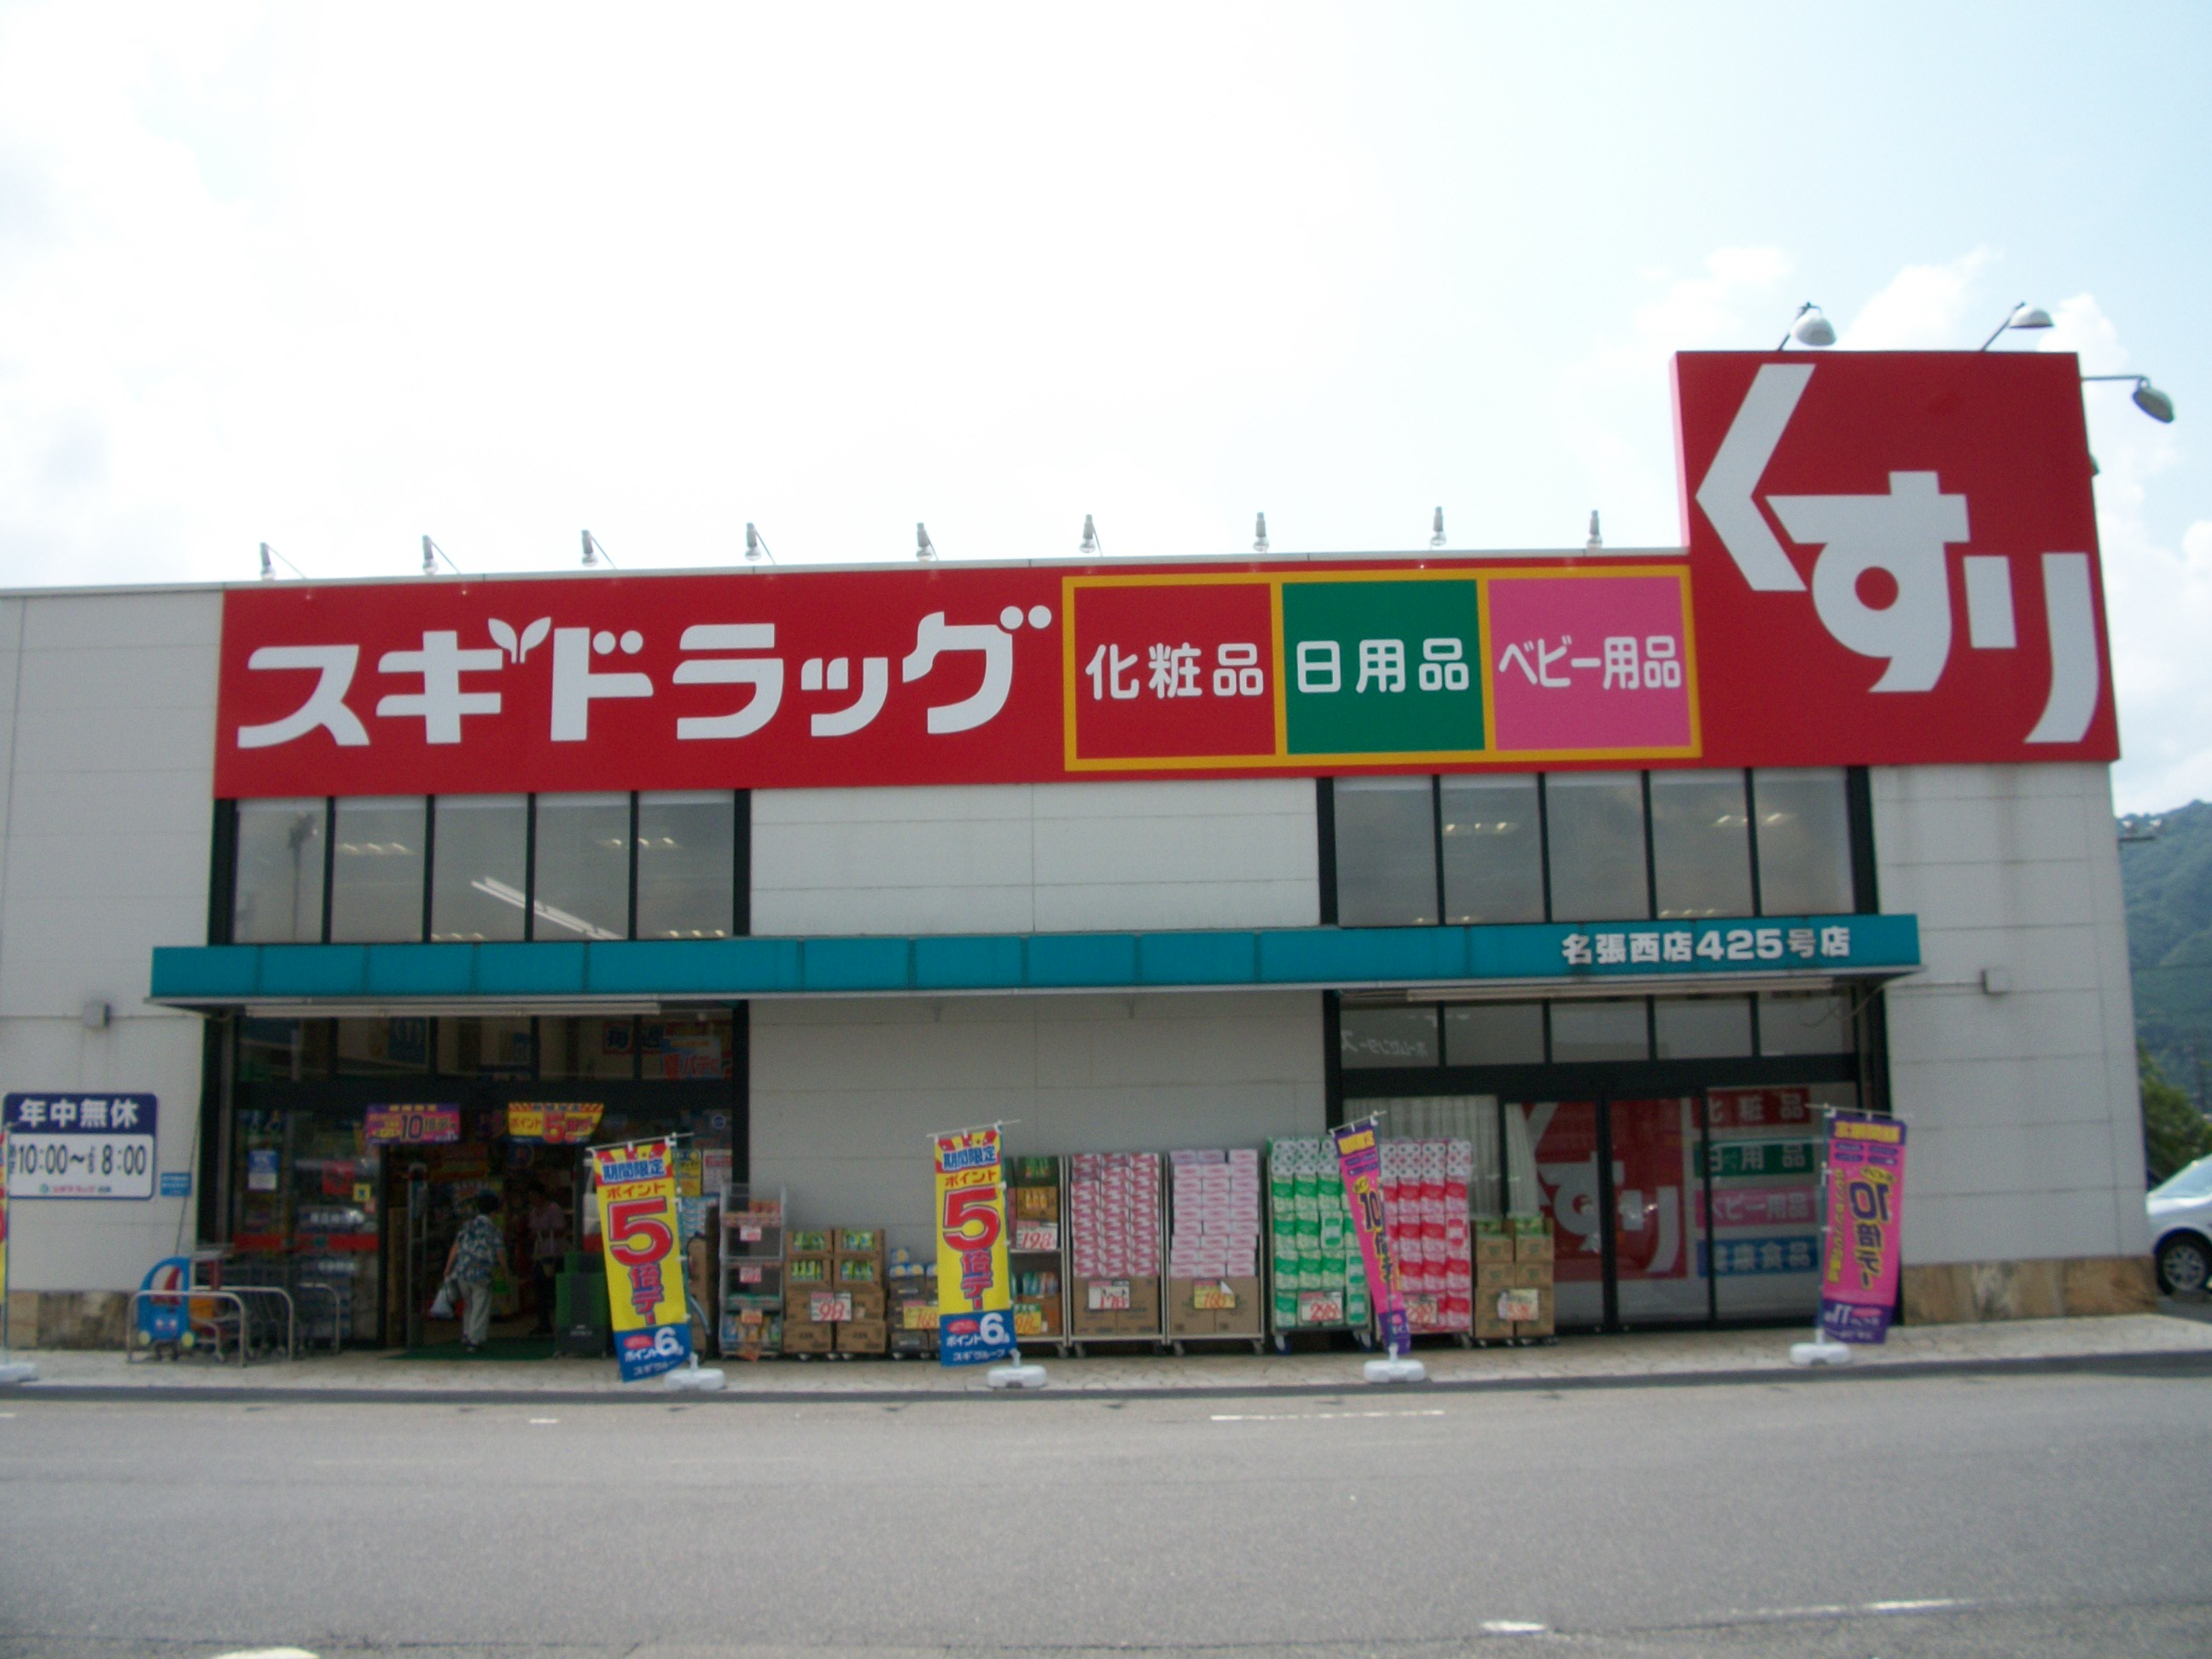 Dorakkusutoa. Cedar pharmacy Nabari Nishiten 1869m until (drugstore)